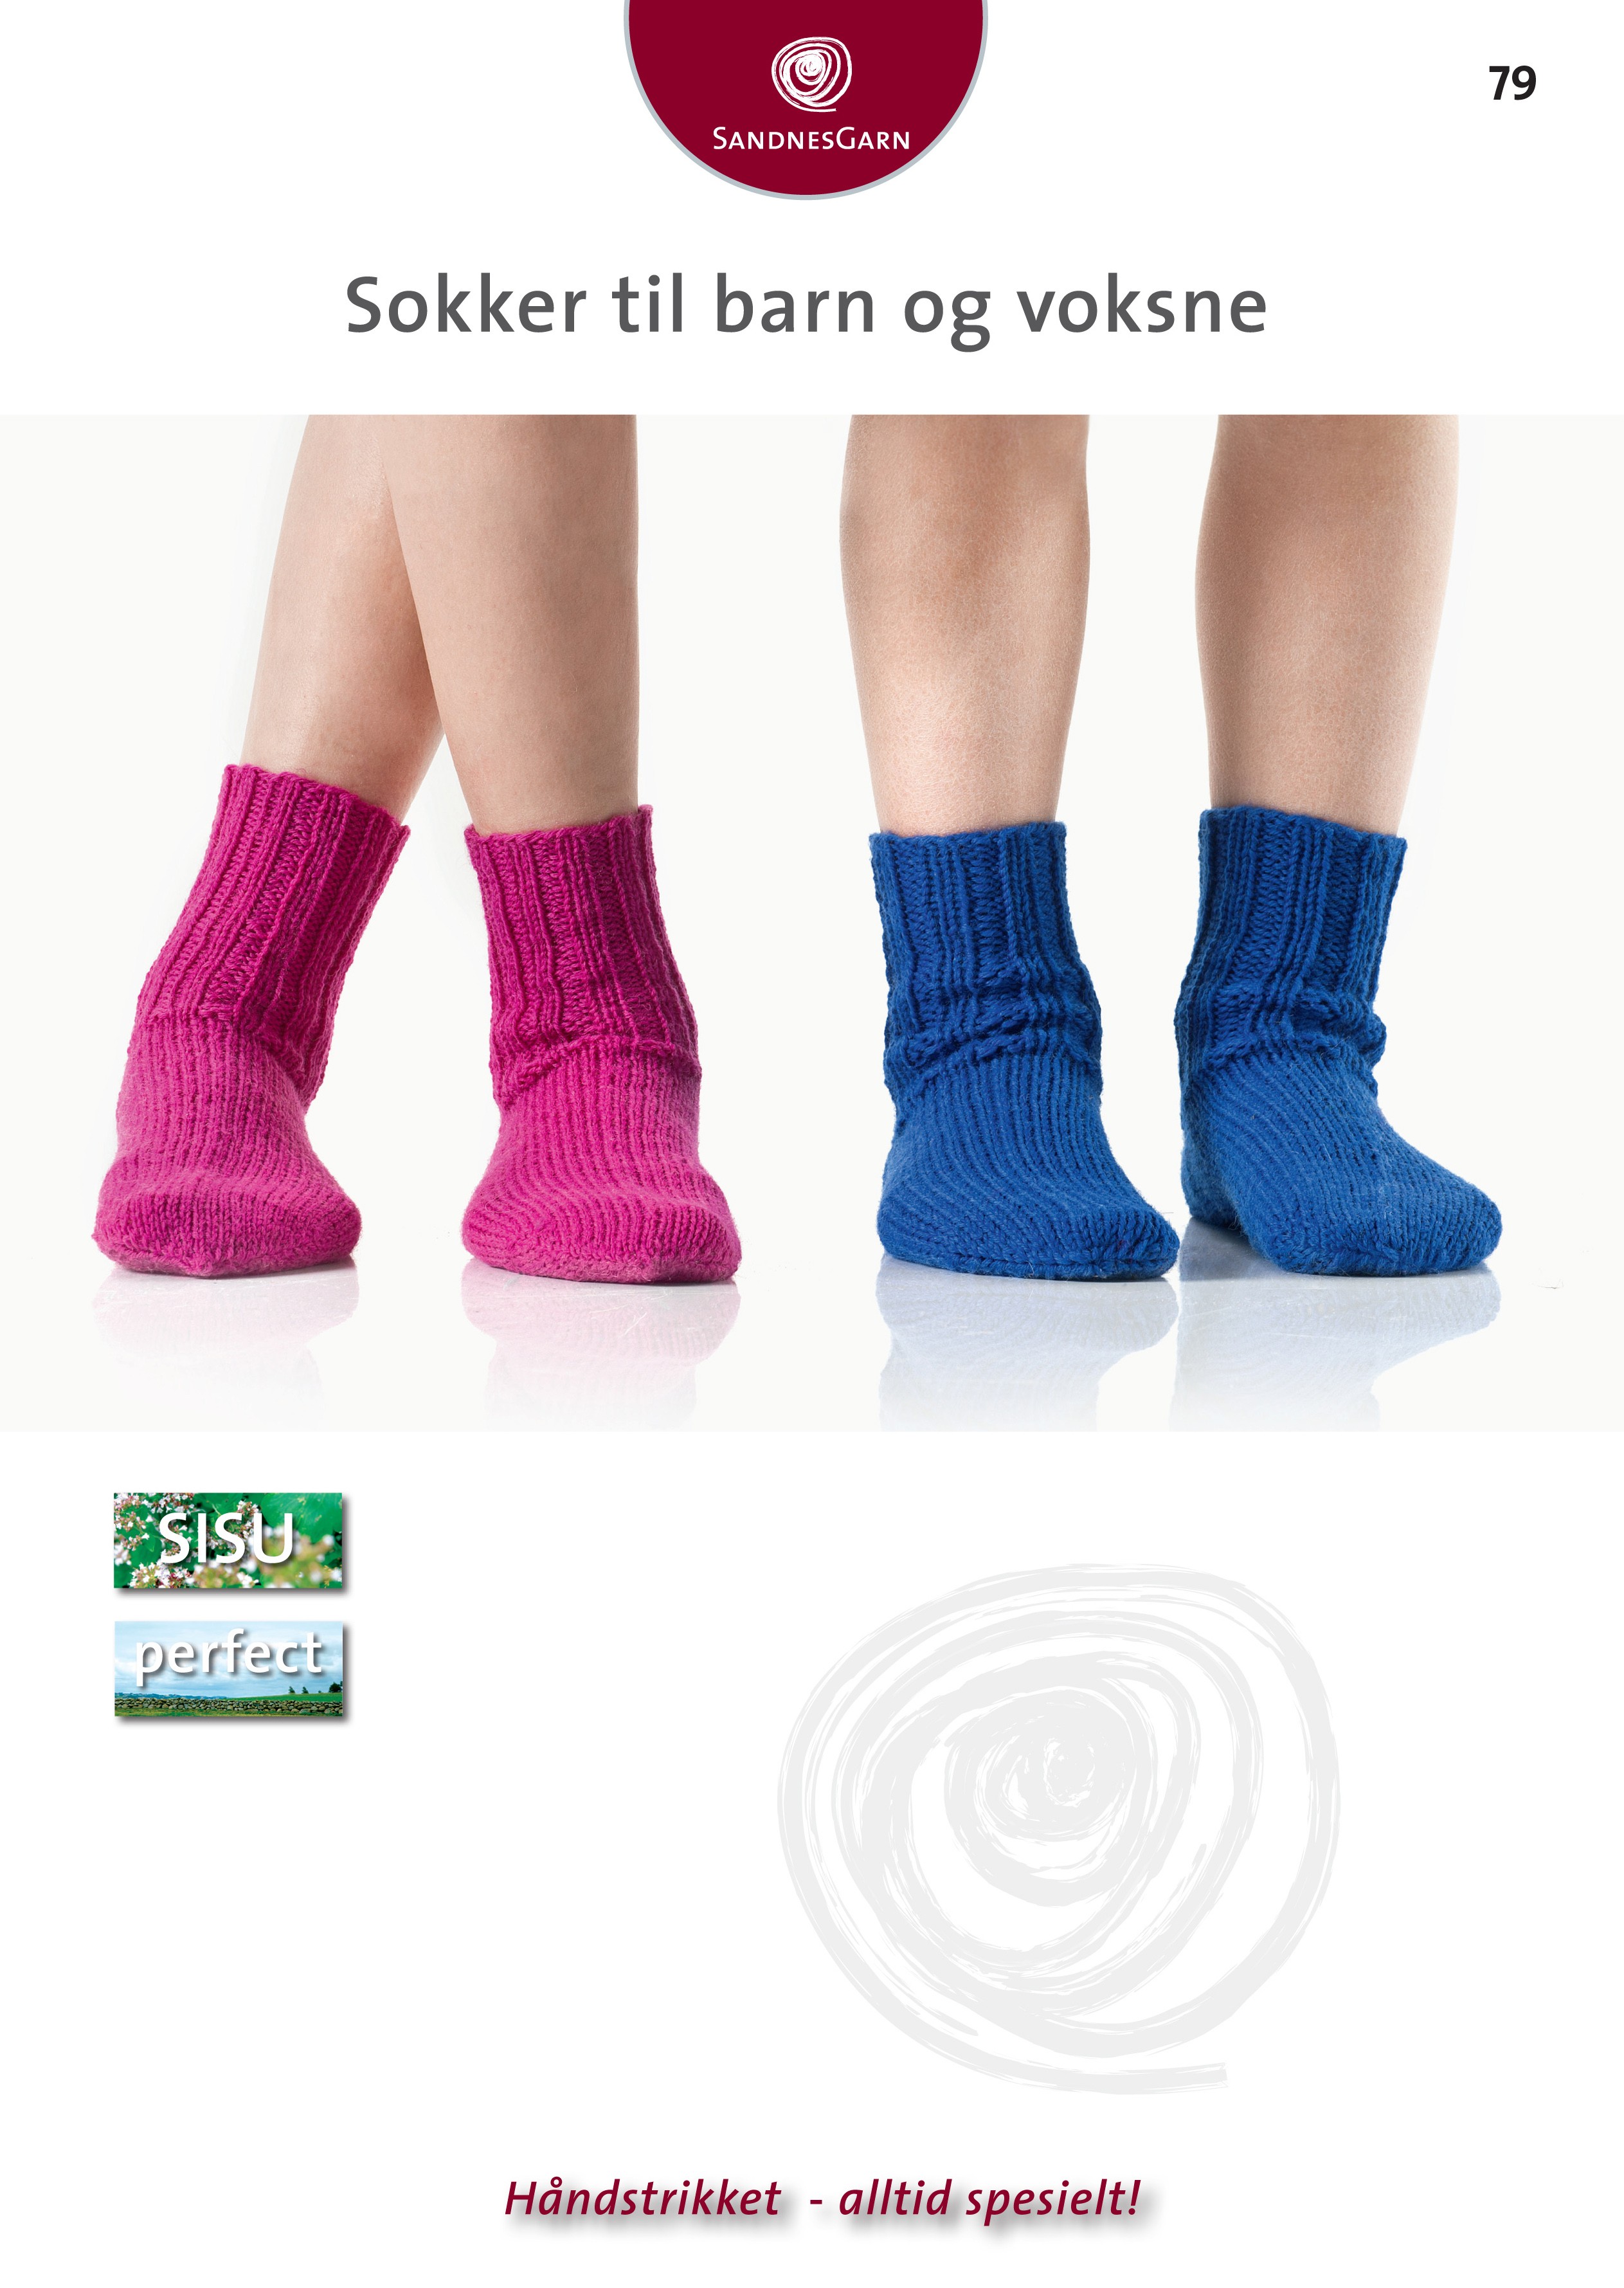 Sokke strømpe opskrift til barn og voksen i Sisu og Percet garn, gratis PDF - Sandnes Baby / Barn enkelt opskrifter - Tante Hanne